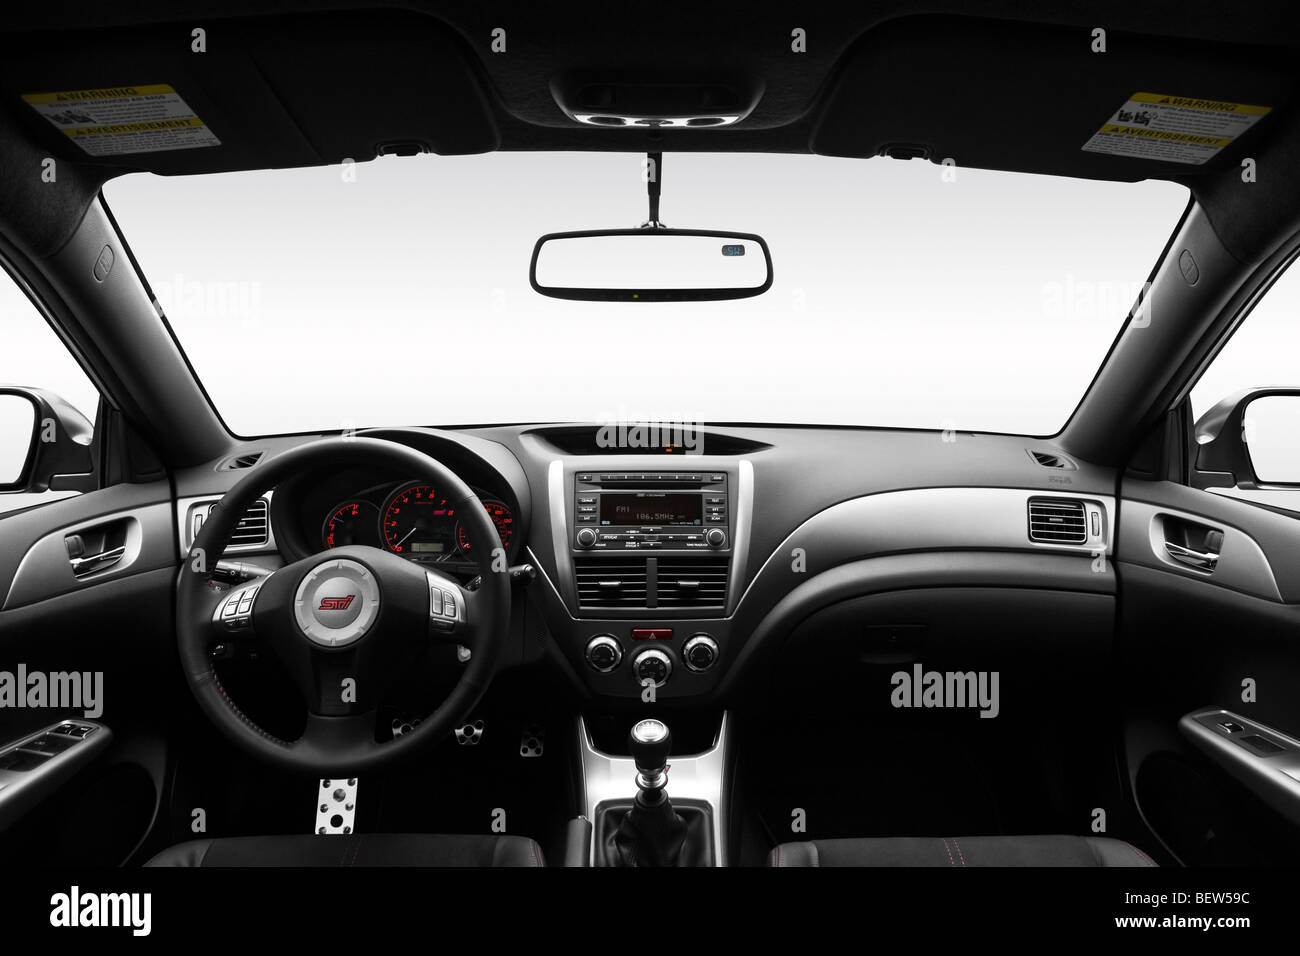 2010 Subaru Impreza WRX STI in argento - Cruscotto, consolle cambio di marcia visualizzare Foto Stock